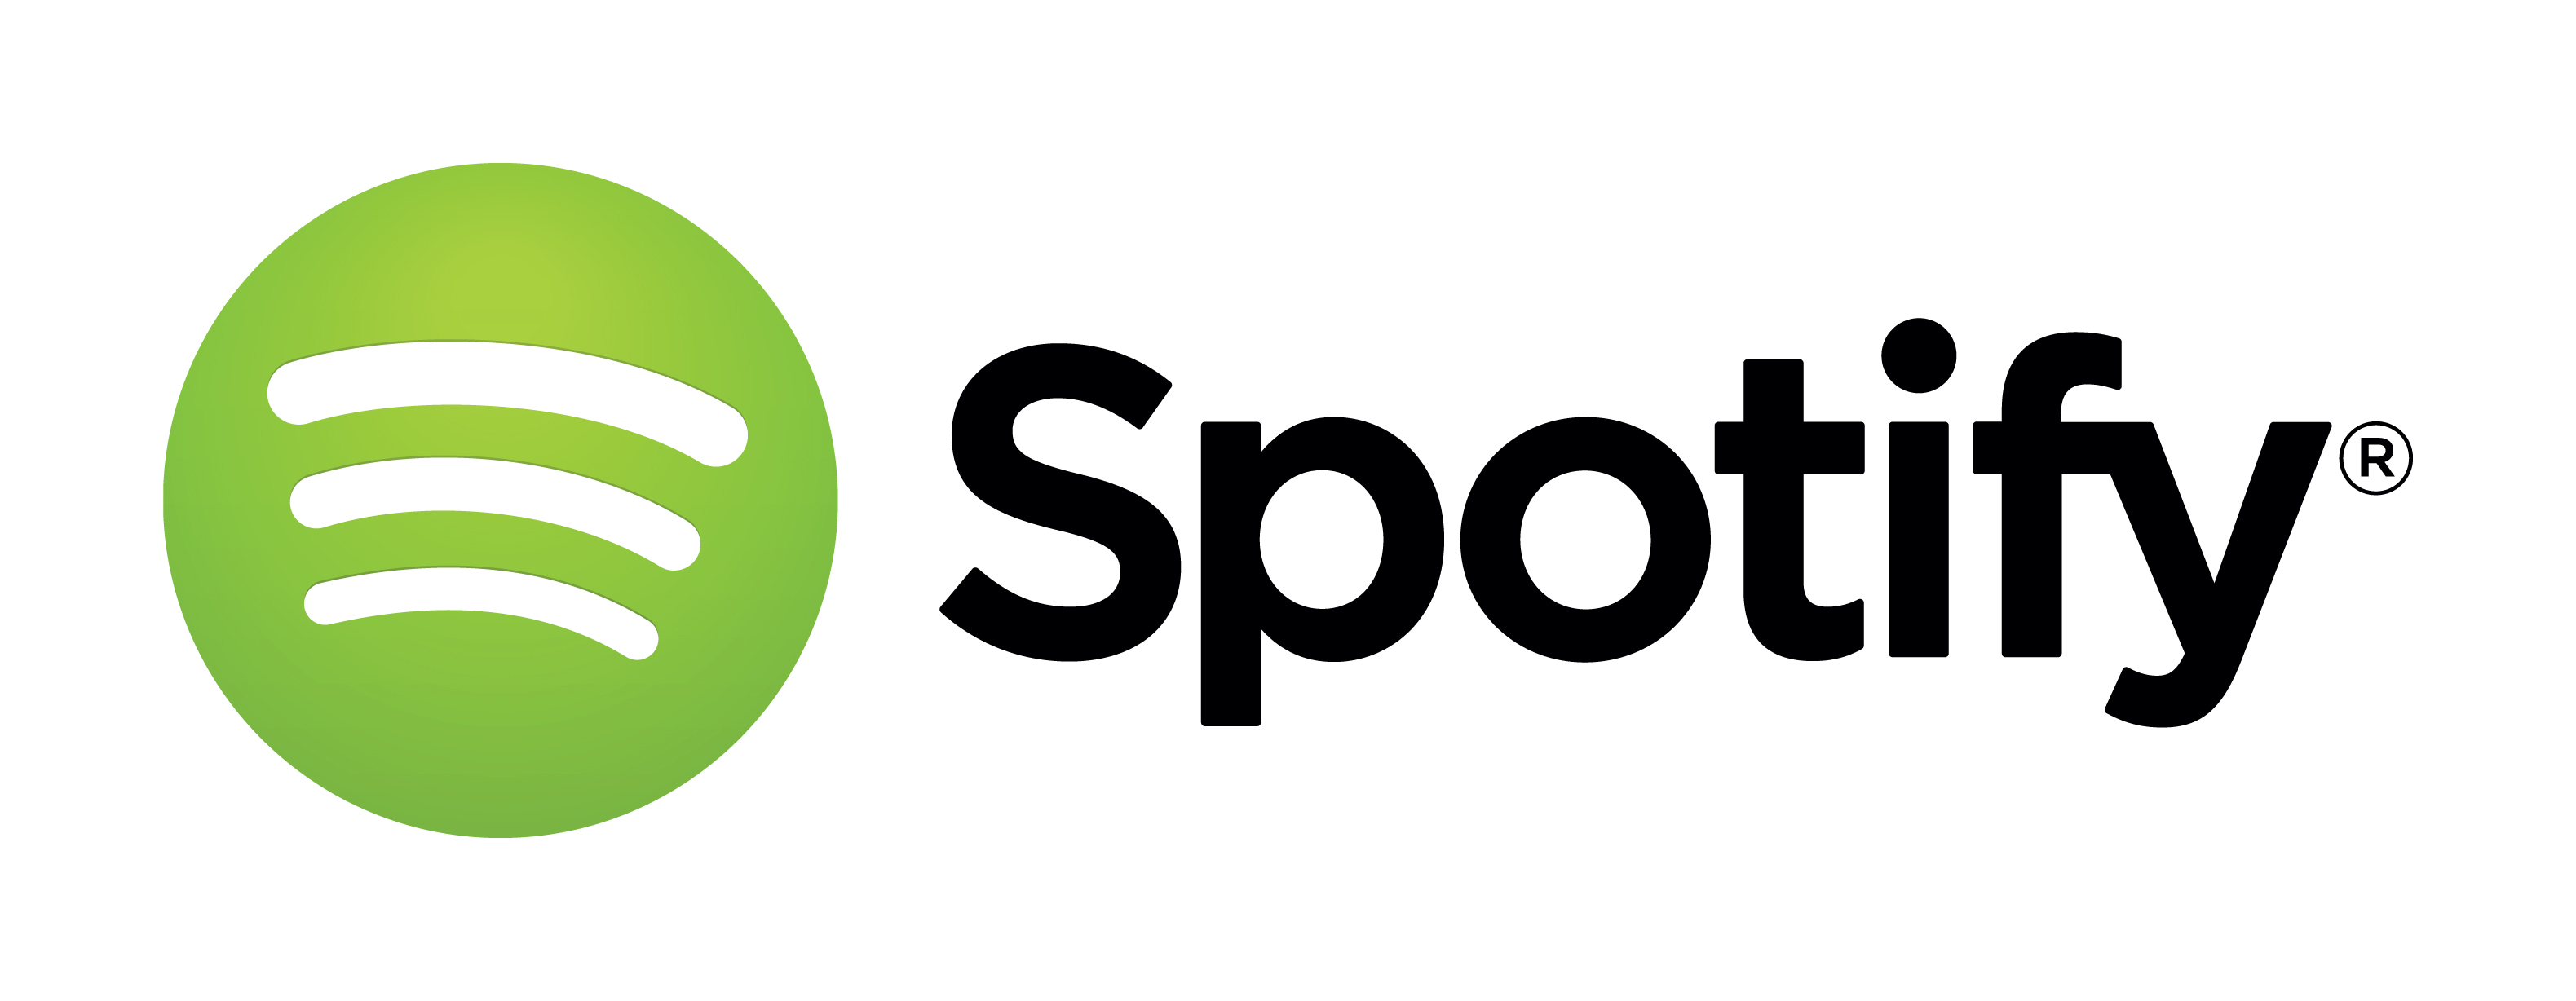 Hudební služba Spotify vstoupila na český trh.